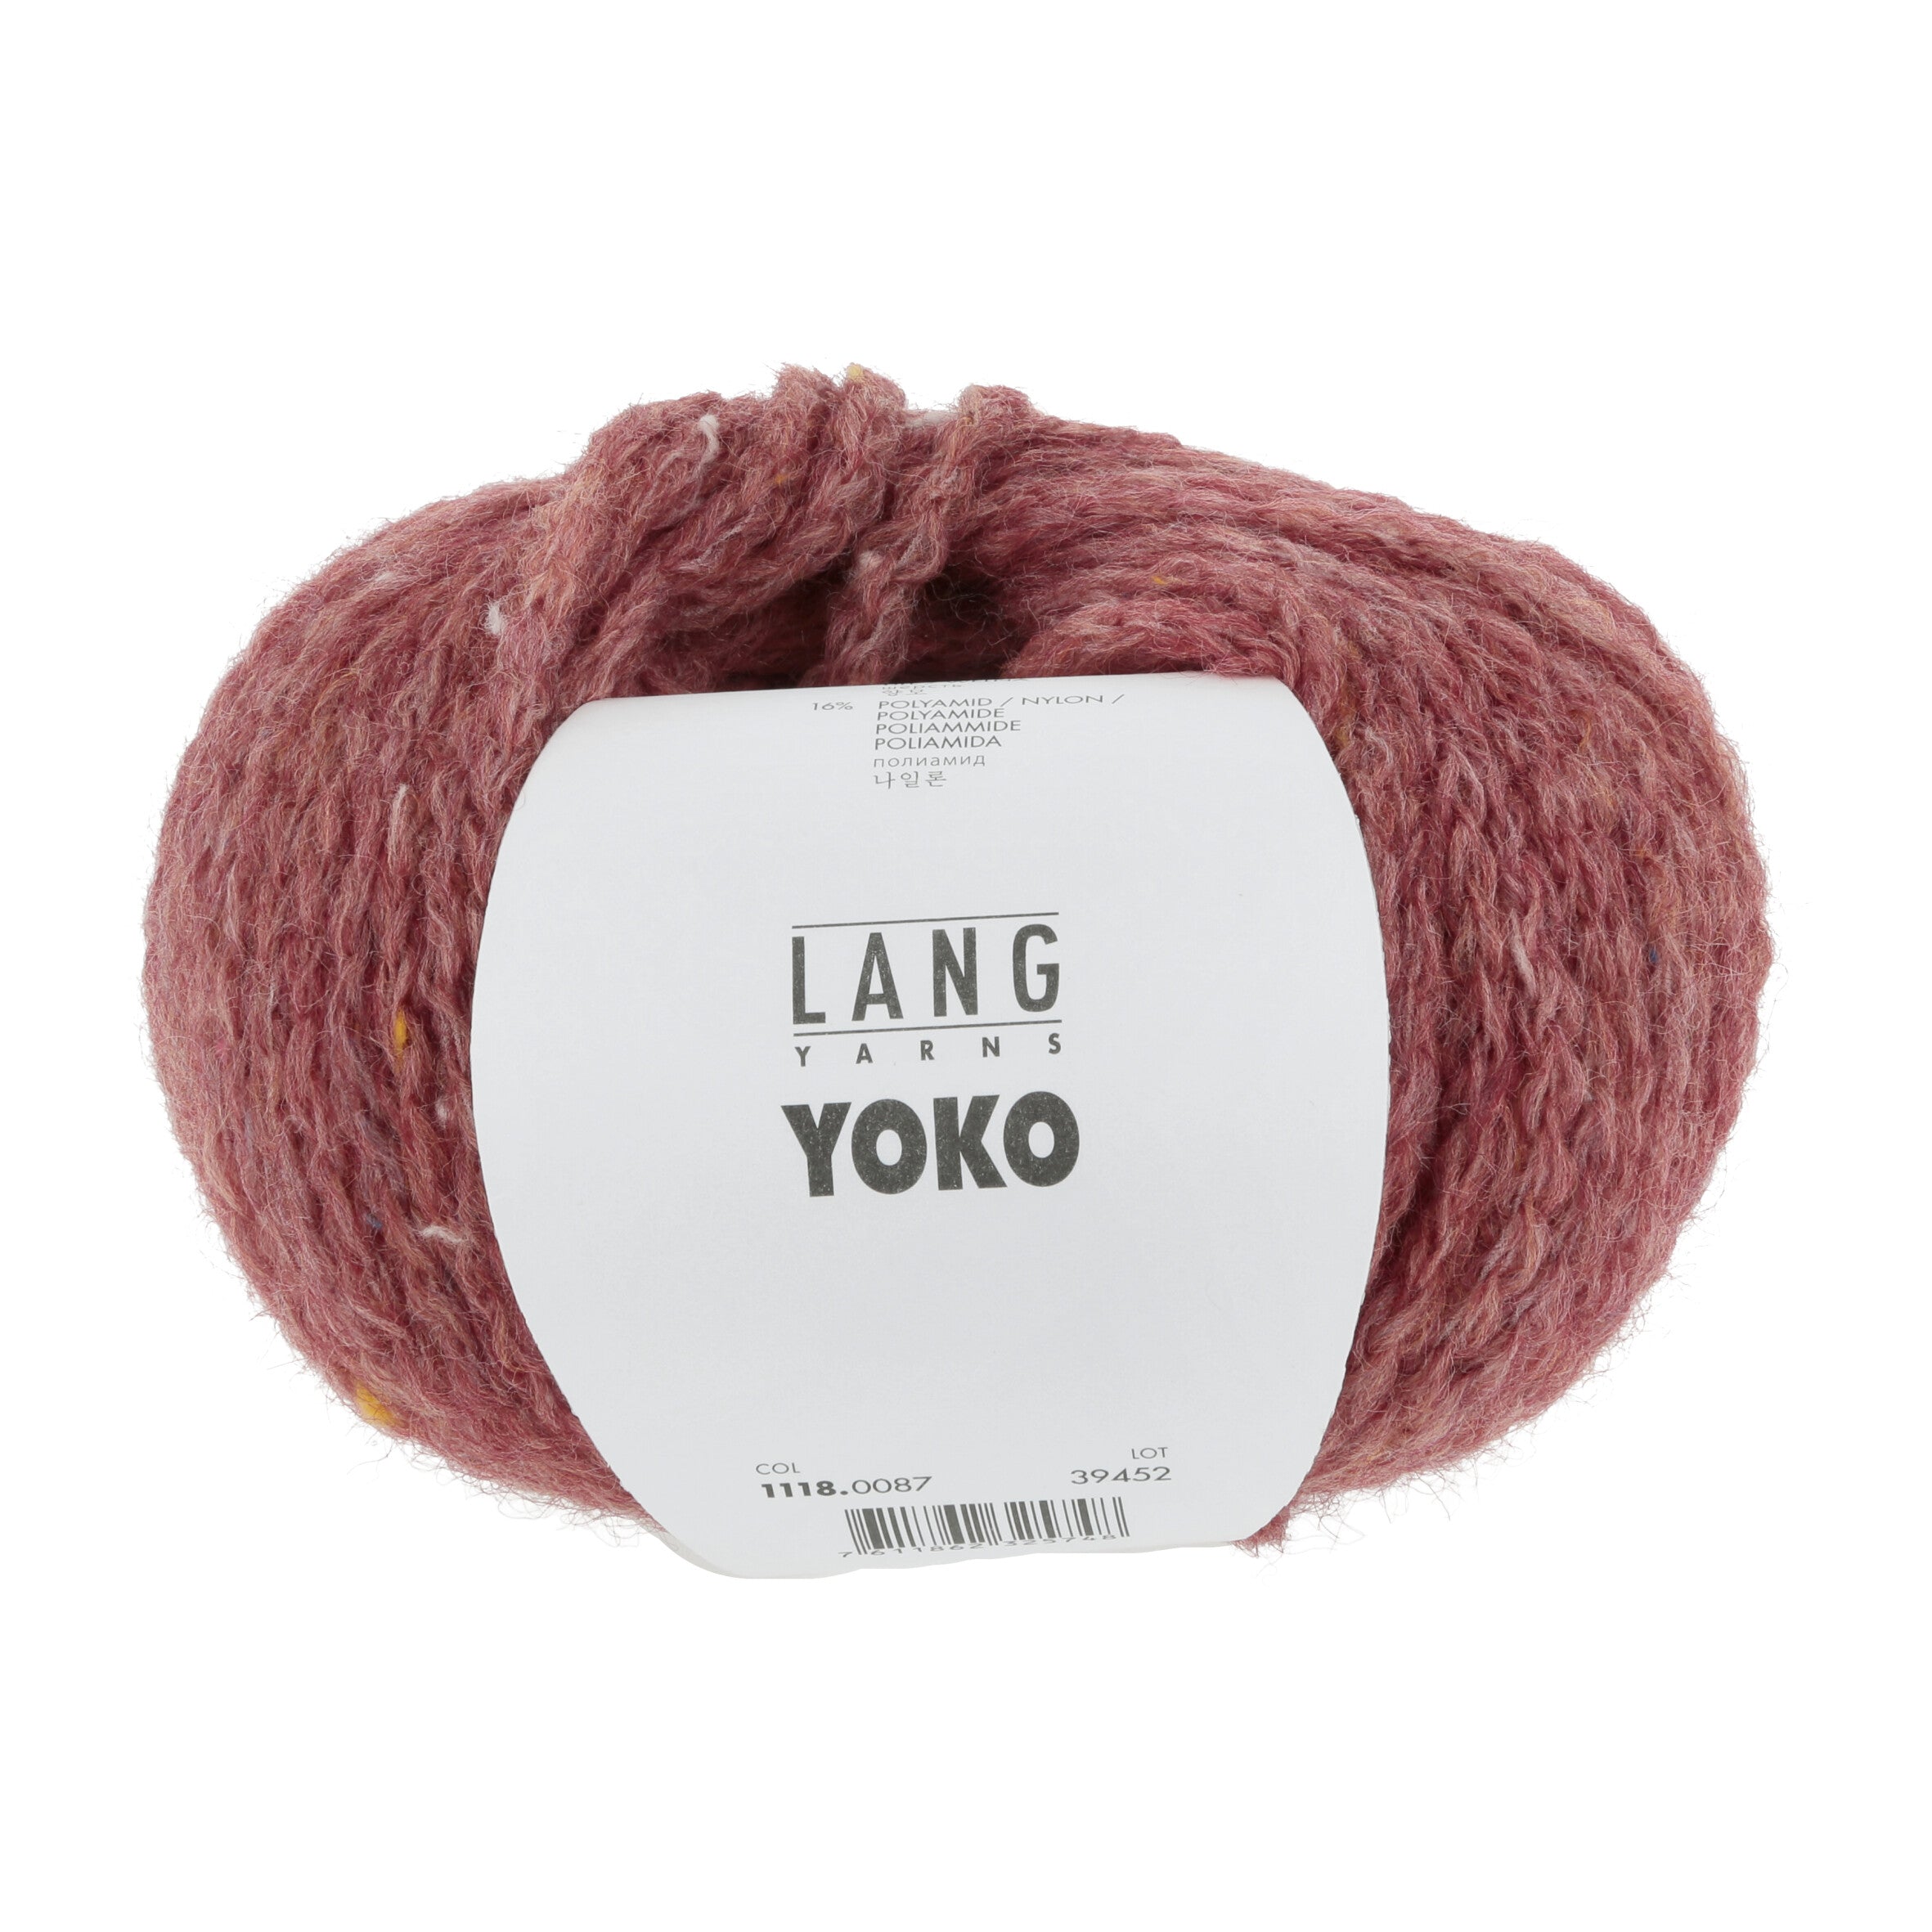 YOKO von LANG YARNS jetzt online kaufen bei OONIQUE